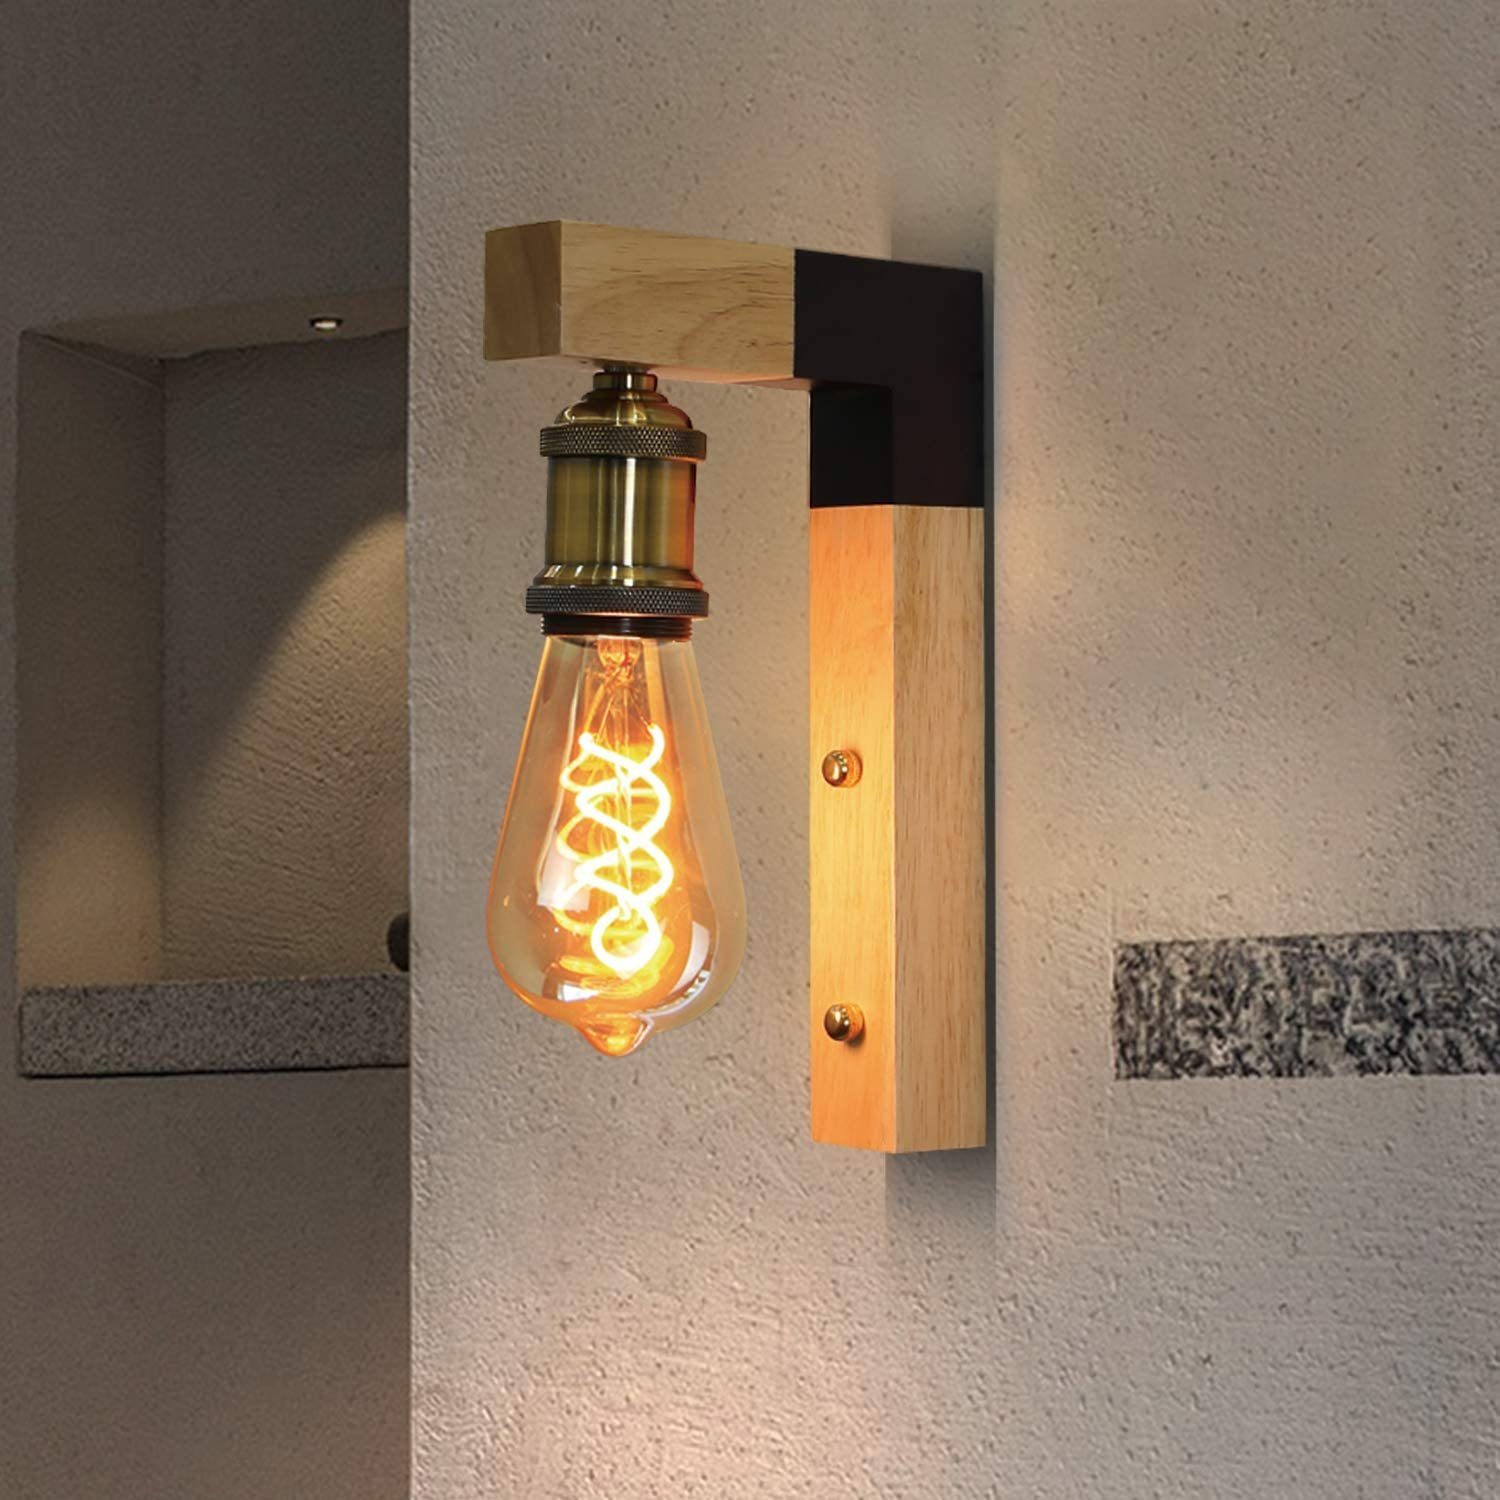 Industriellampe Vintage Wandleuchte Wandlampe Wand Beleuchtung Retro Lampe DE!! 